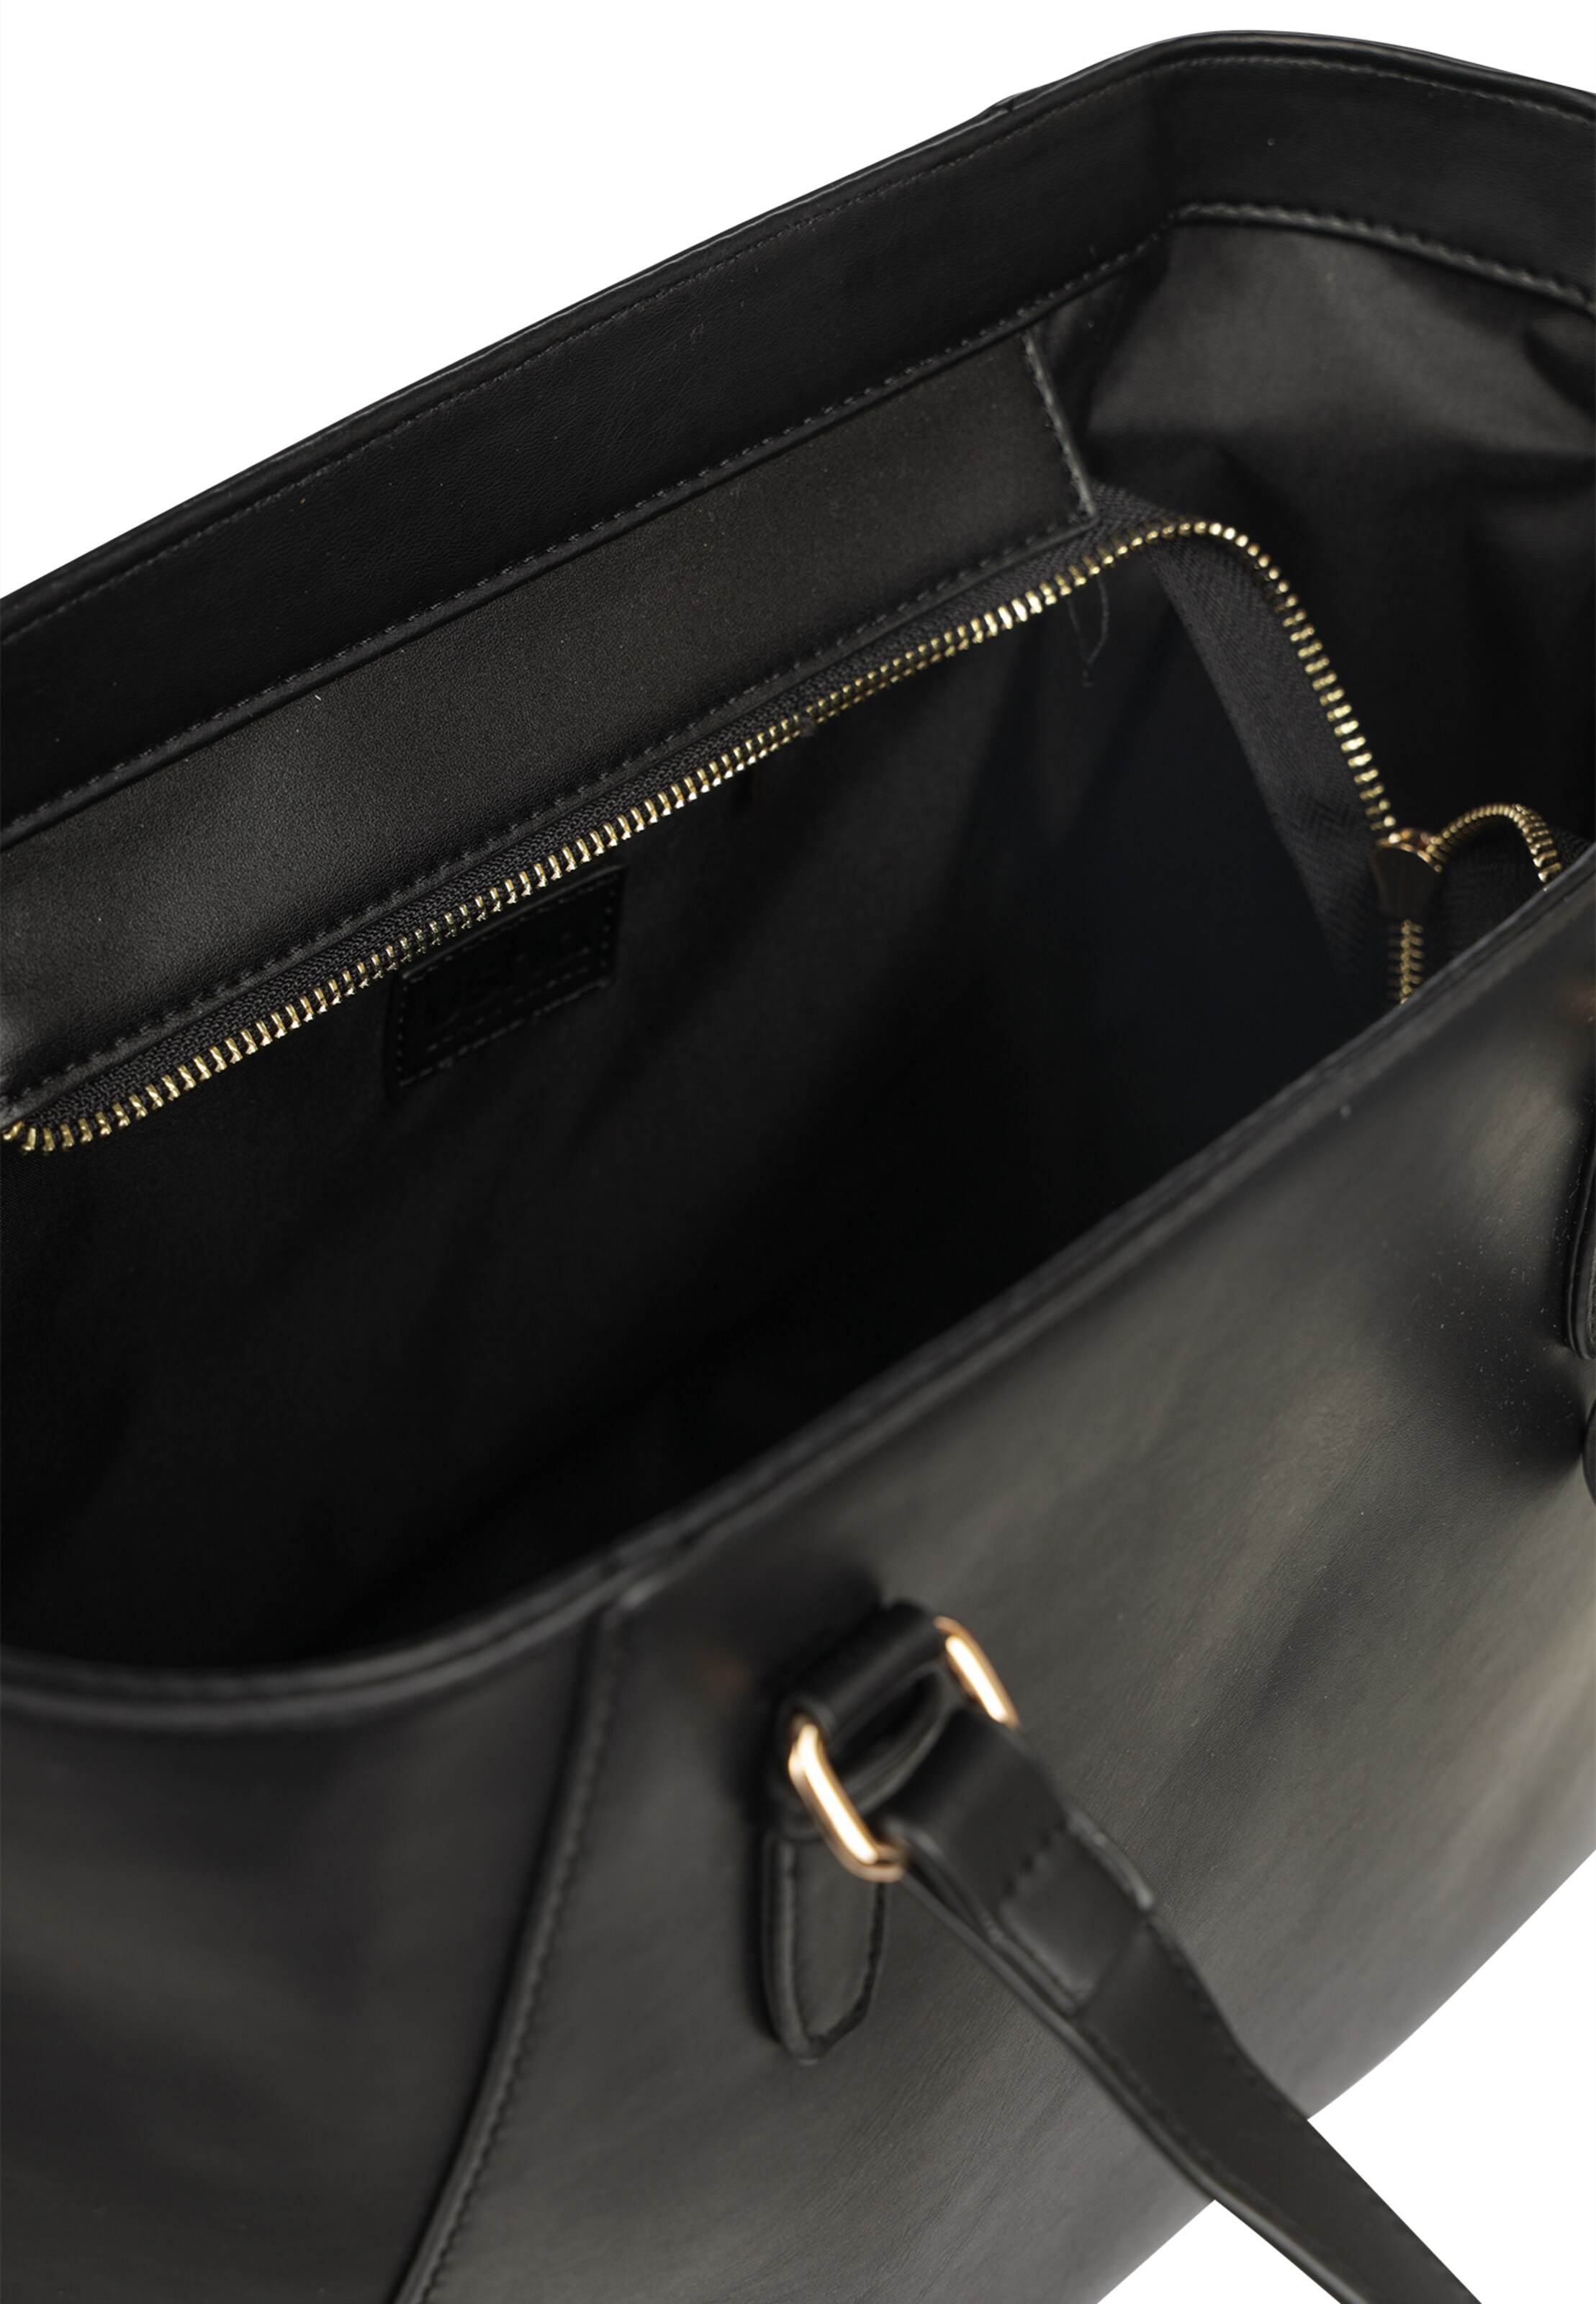 Frauen Taschen & Rucksäcke usha BLACK LABEL Handtasche in Schwarz - IJ76360